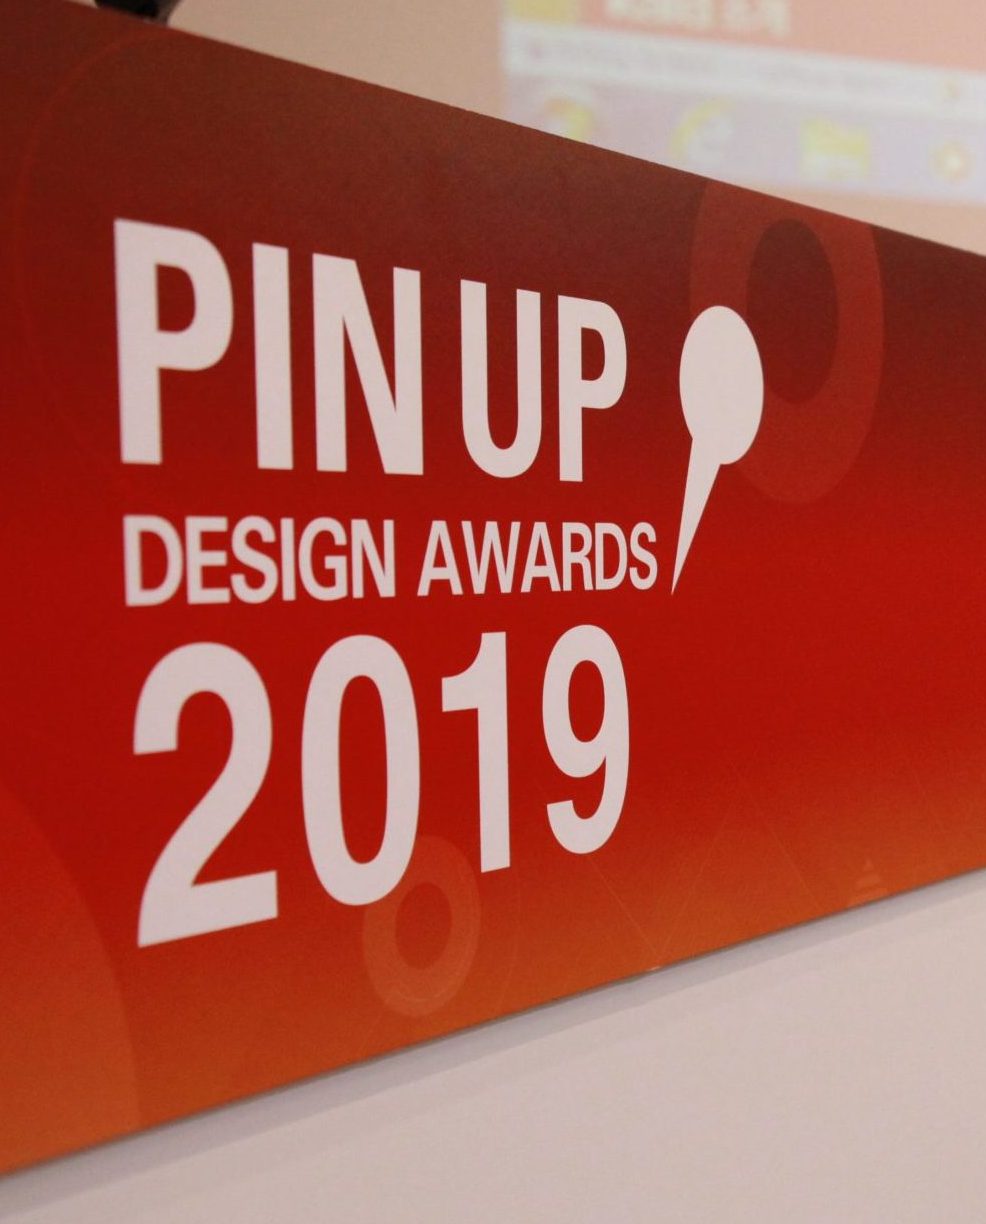 PINUP DESIGN AWARDS 2019